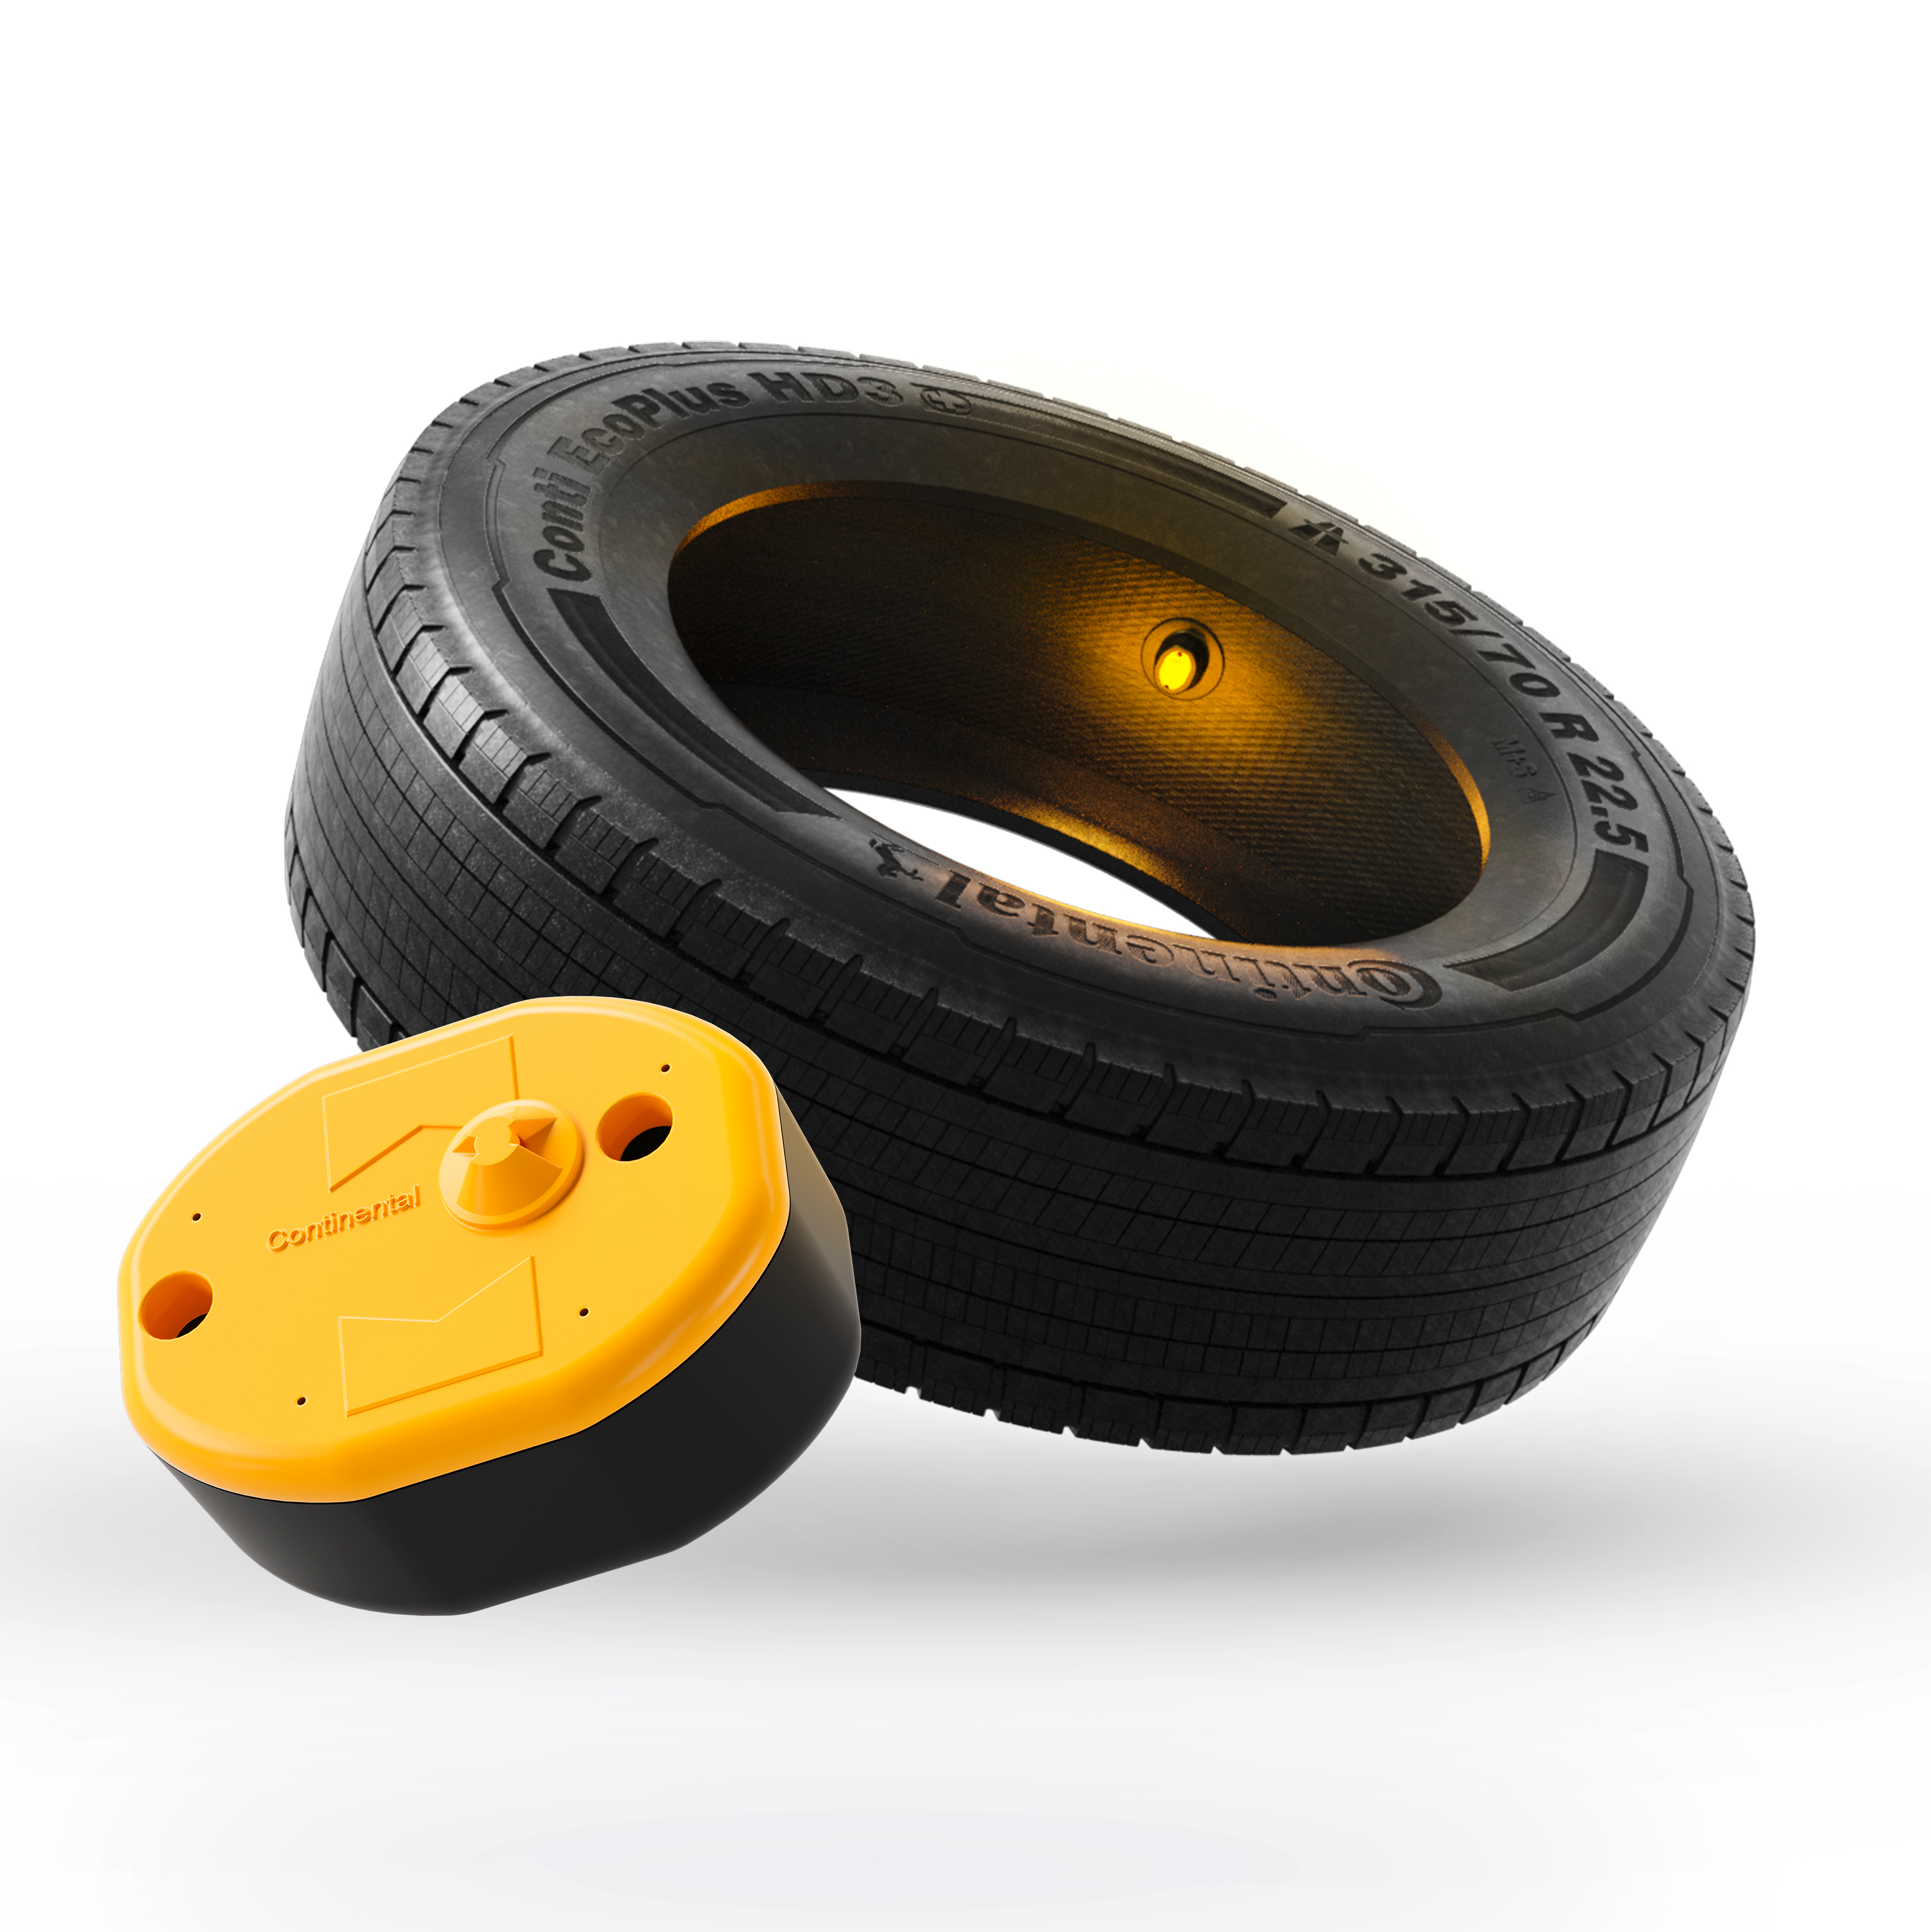 ContiConnect tire sensor